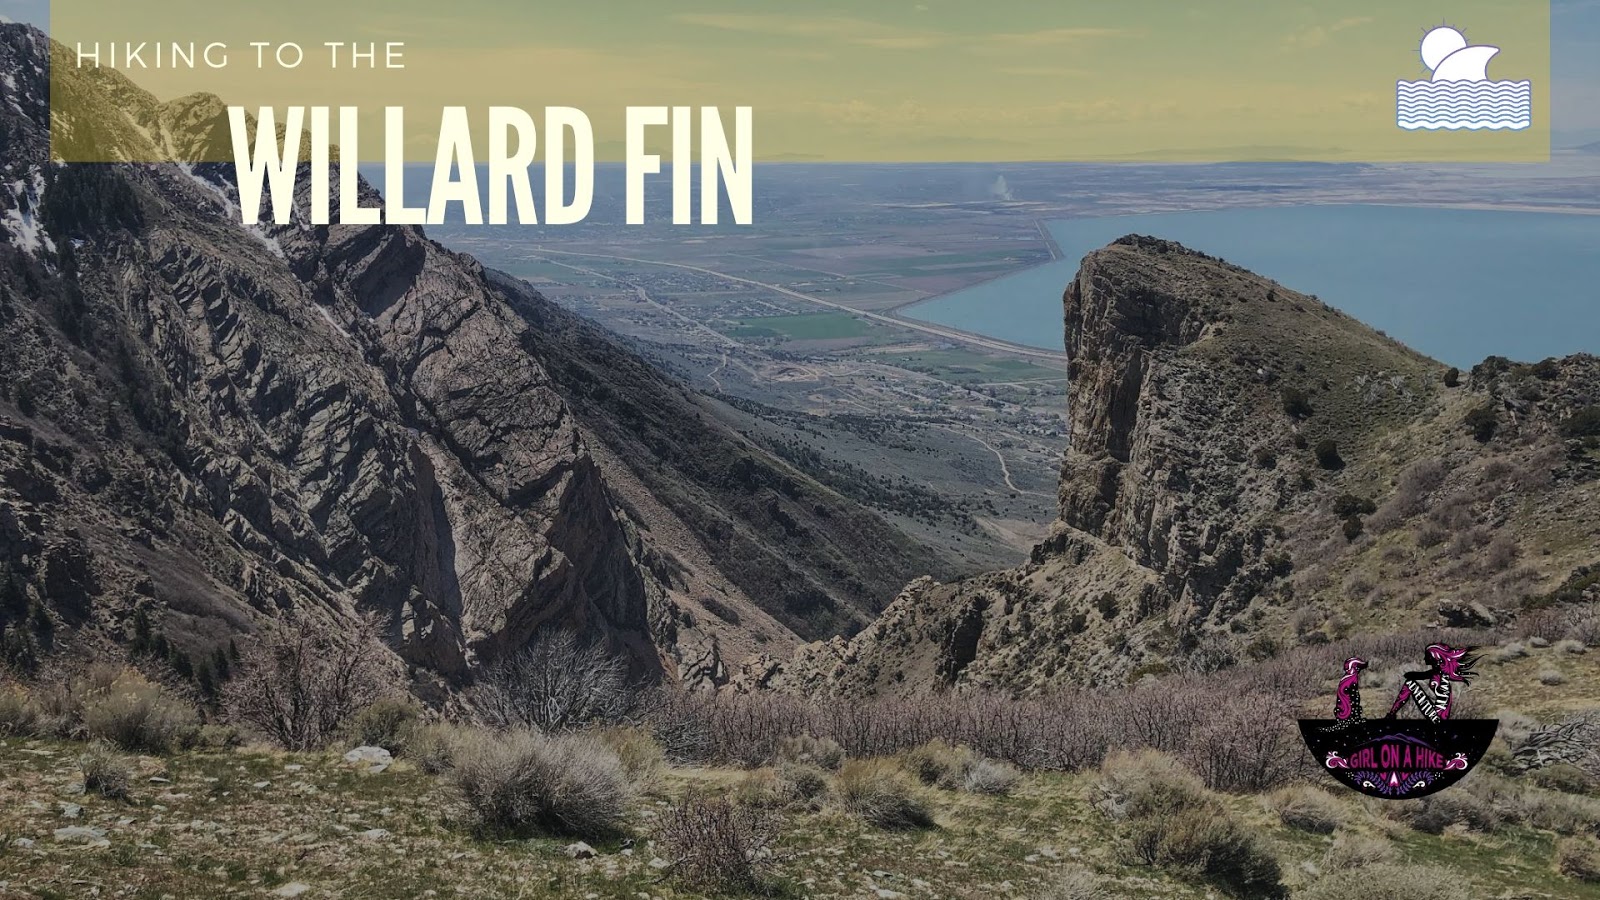 Hiking to the Willard Fin, Hiking in Willard, Utah, hiking in utah with dogs